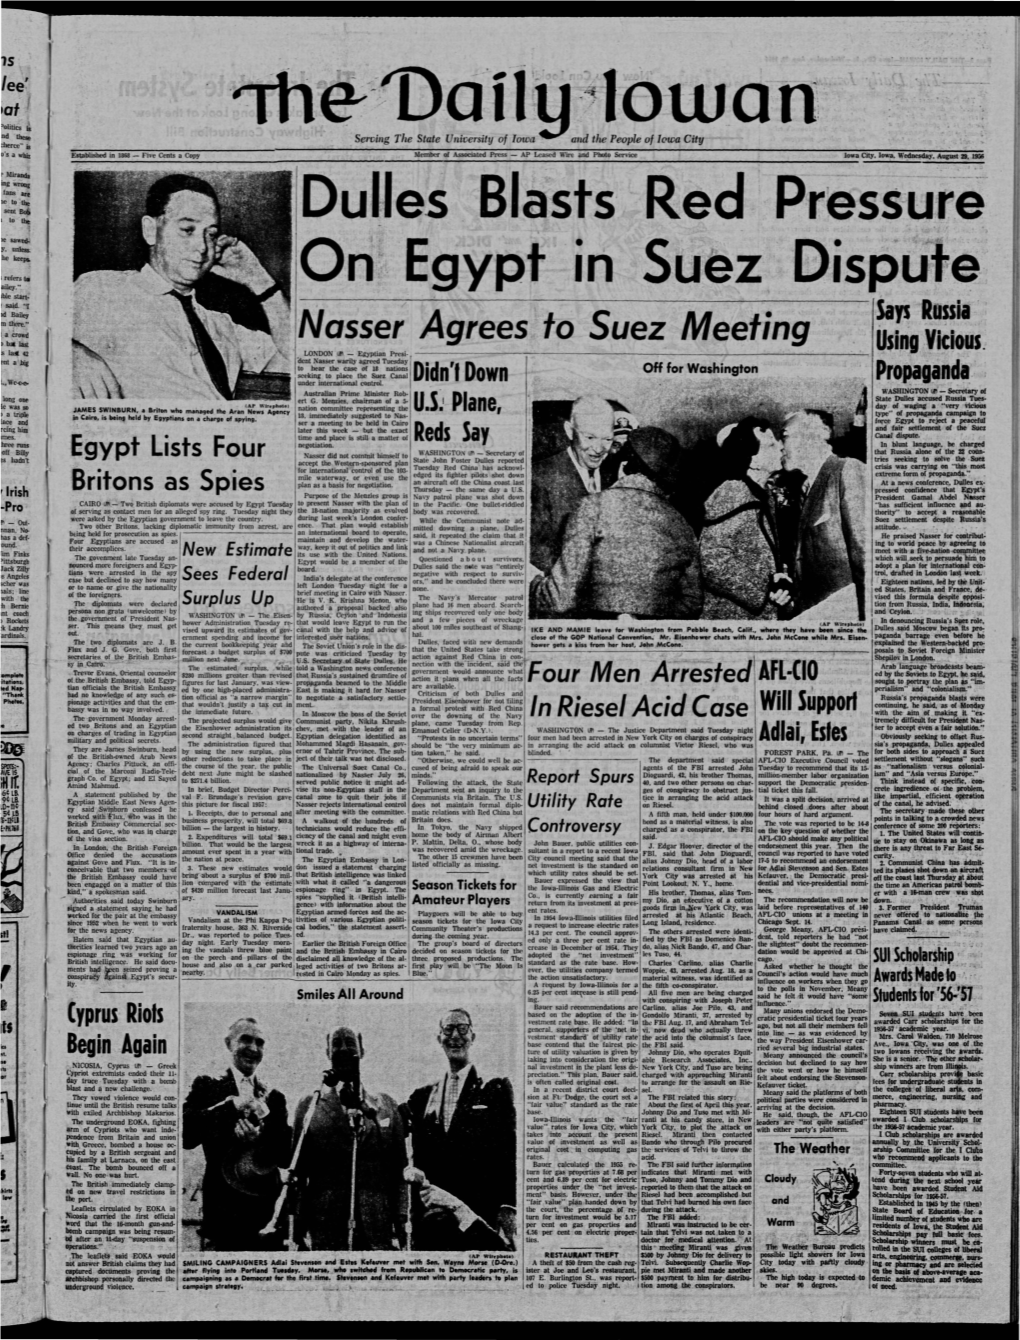 Daily Iowan (Iowa City, Iowa), 1956-08-29